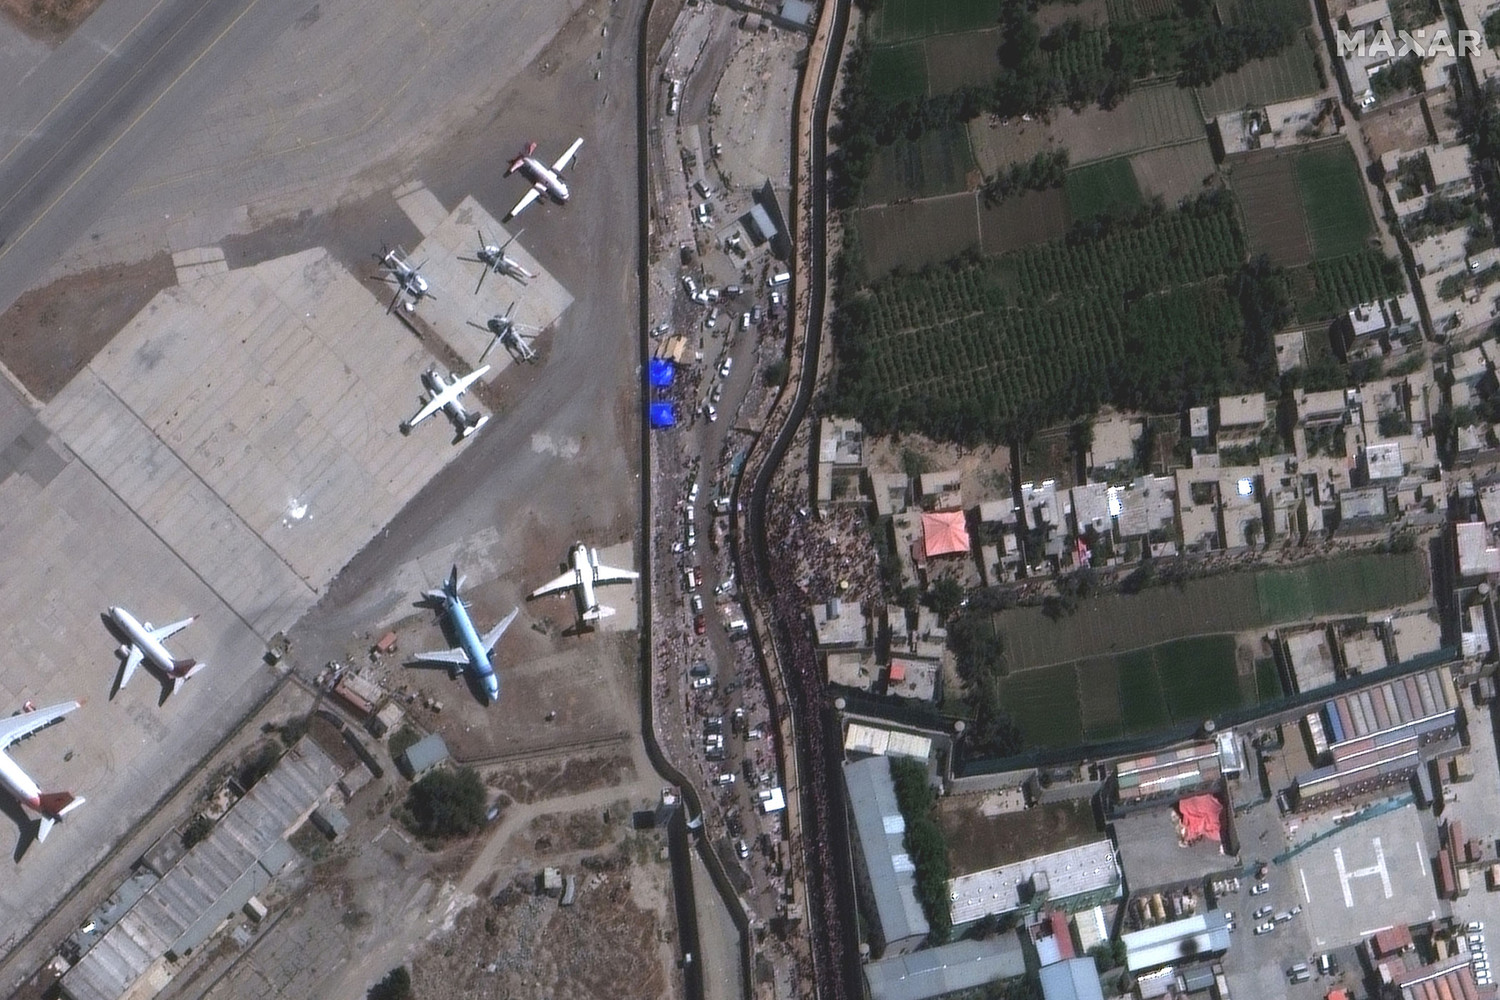 Международный аэропорт Кабула полностью возобновил работу